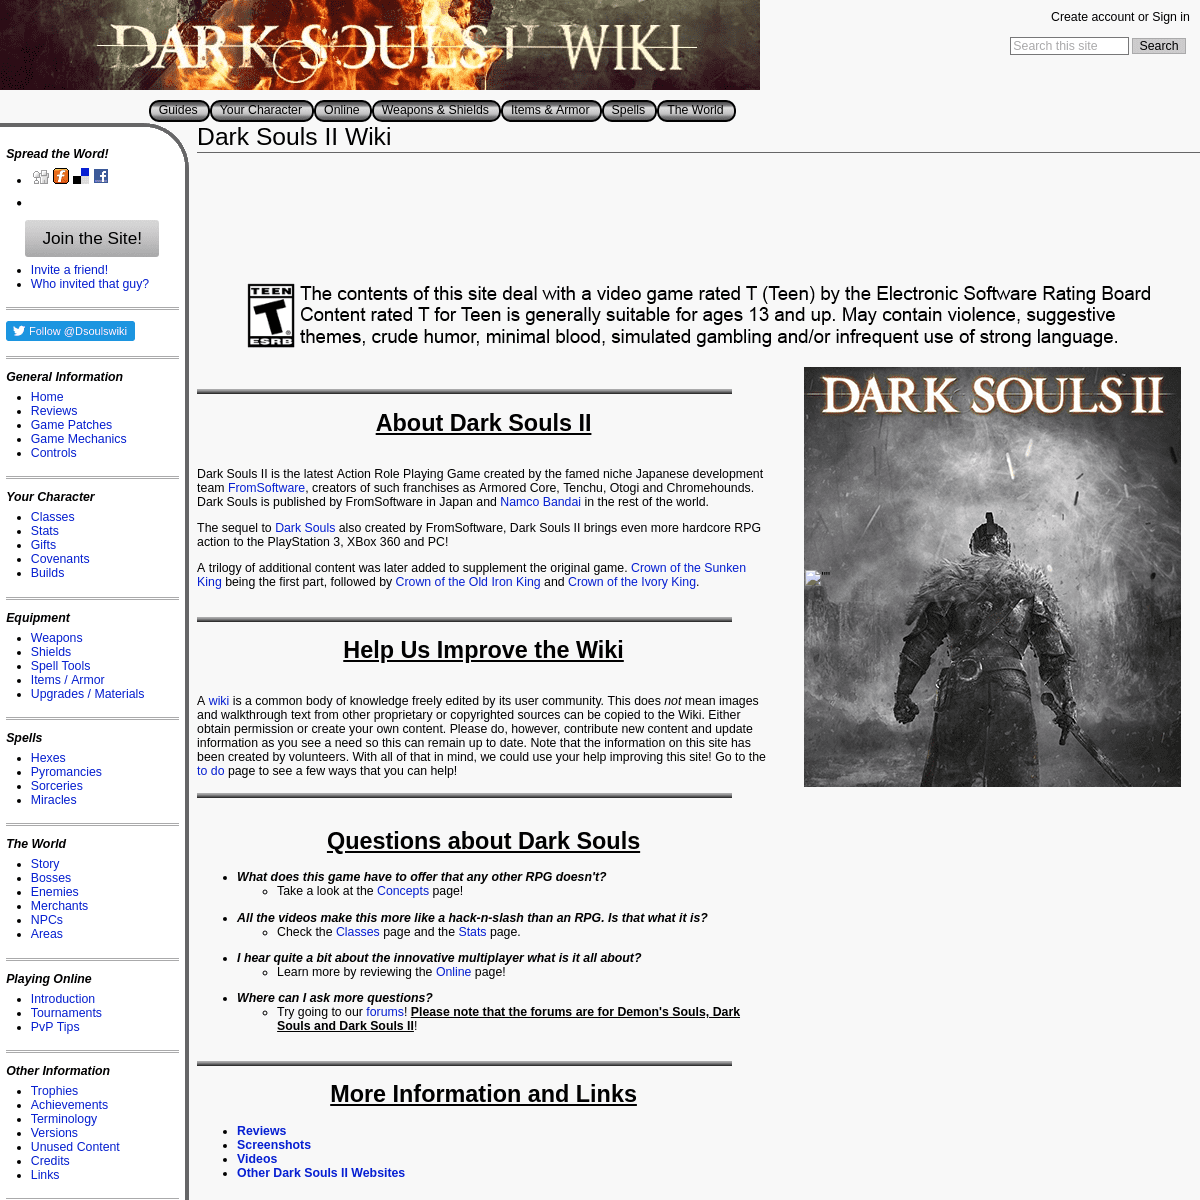 Dark Souls II Wiki - DarkSouls II Wiki